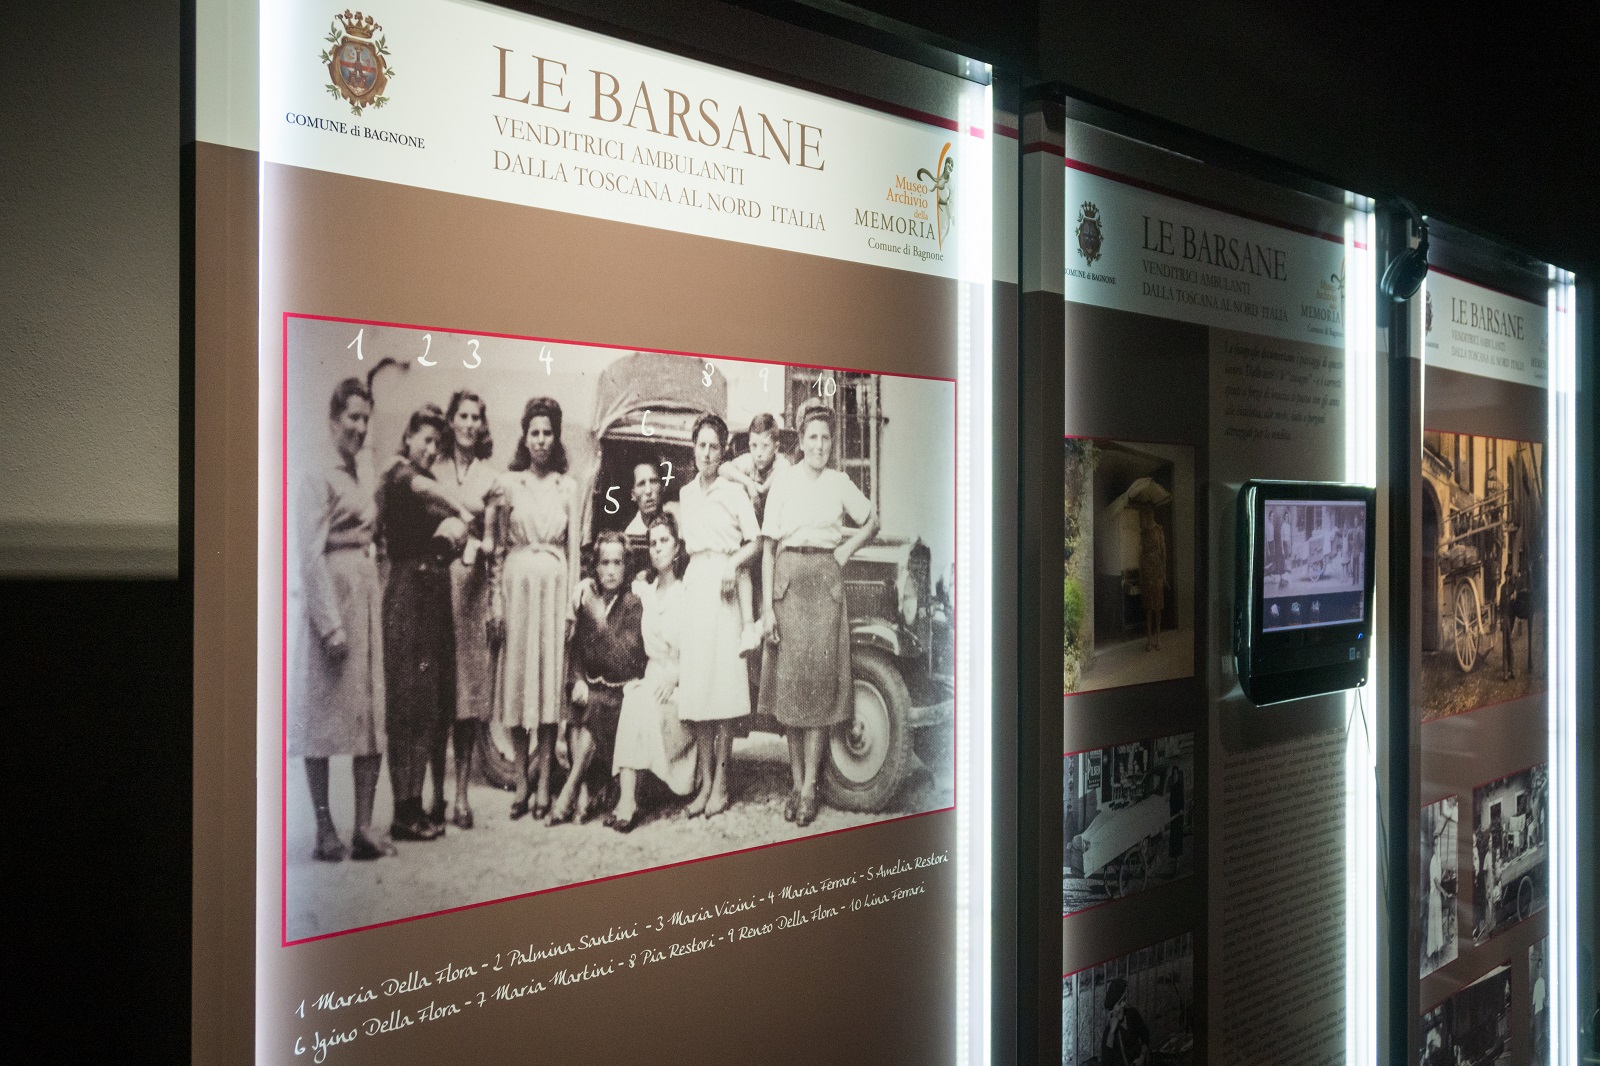 Museum Archivio della Memoria in Bagnone